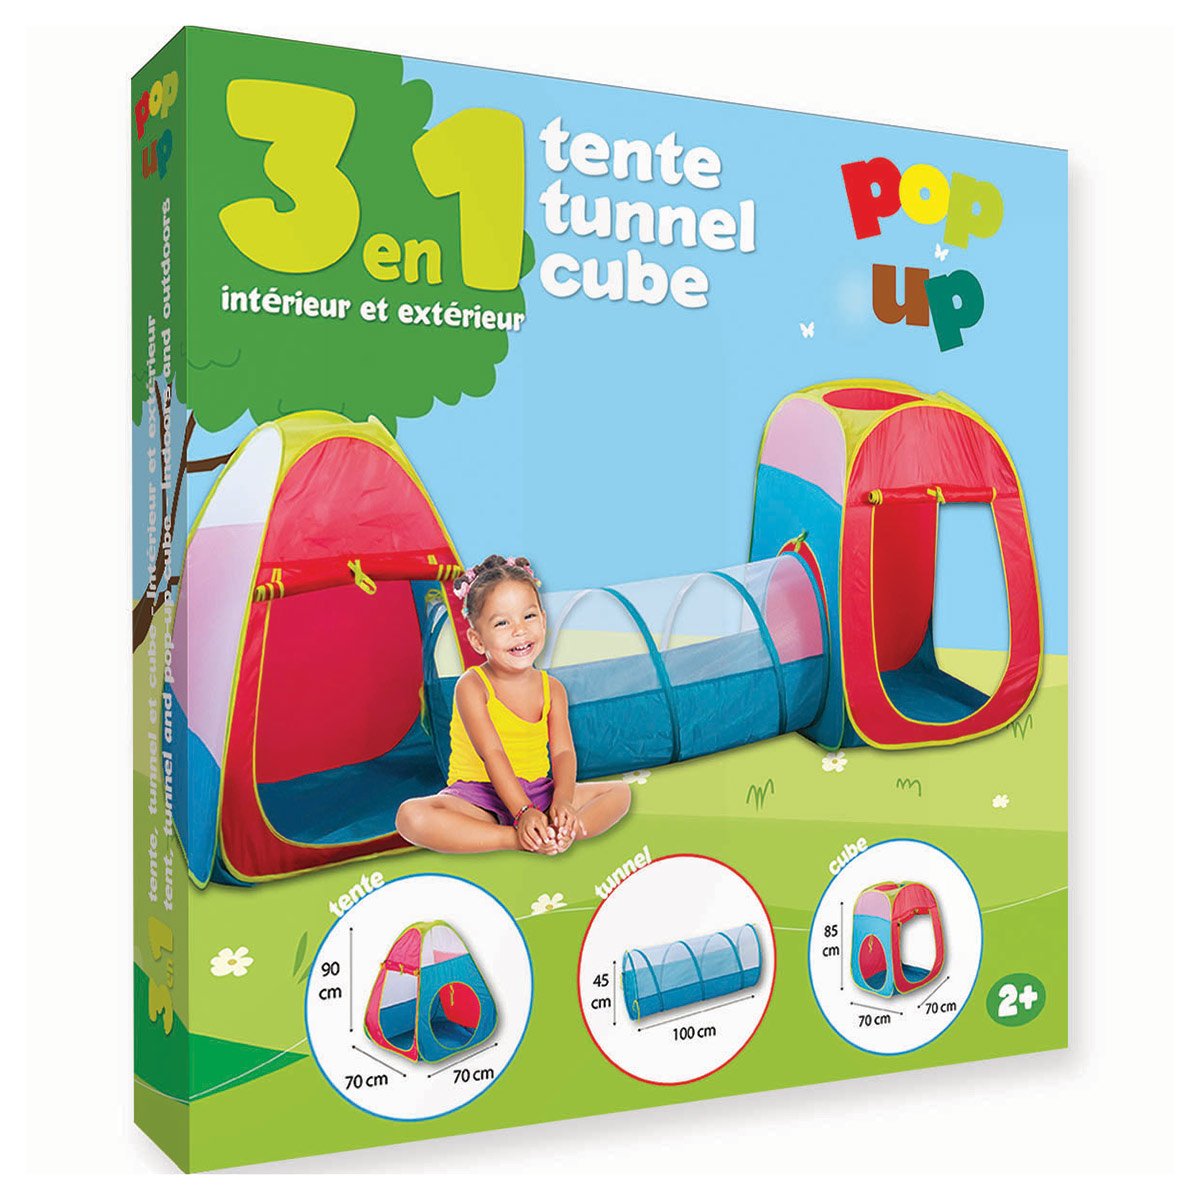 Tente tunnel et cub pop up